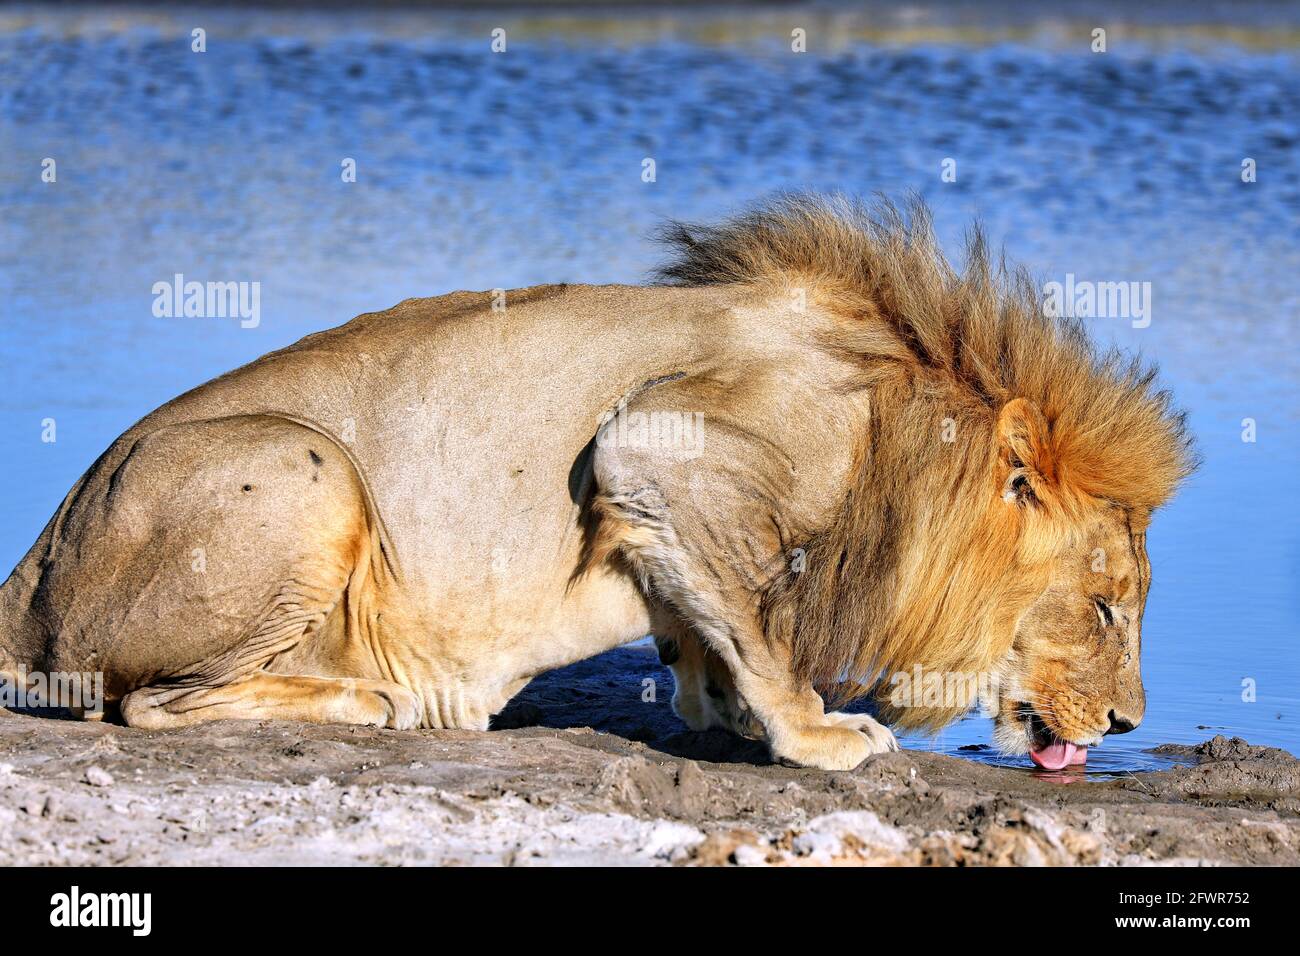 Drinking lion in the morning light, Etosha National Park, Namibia Stock Photo